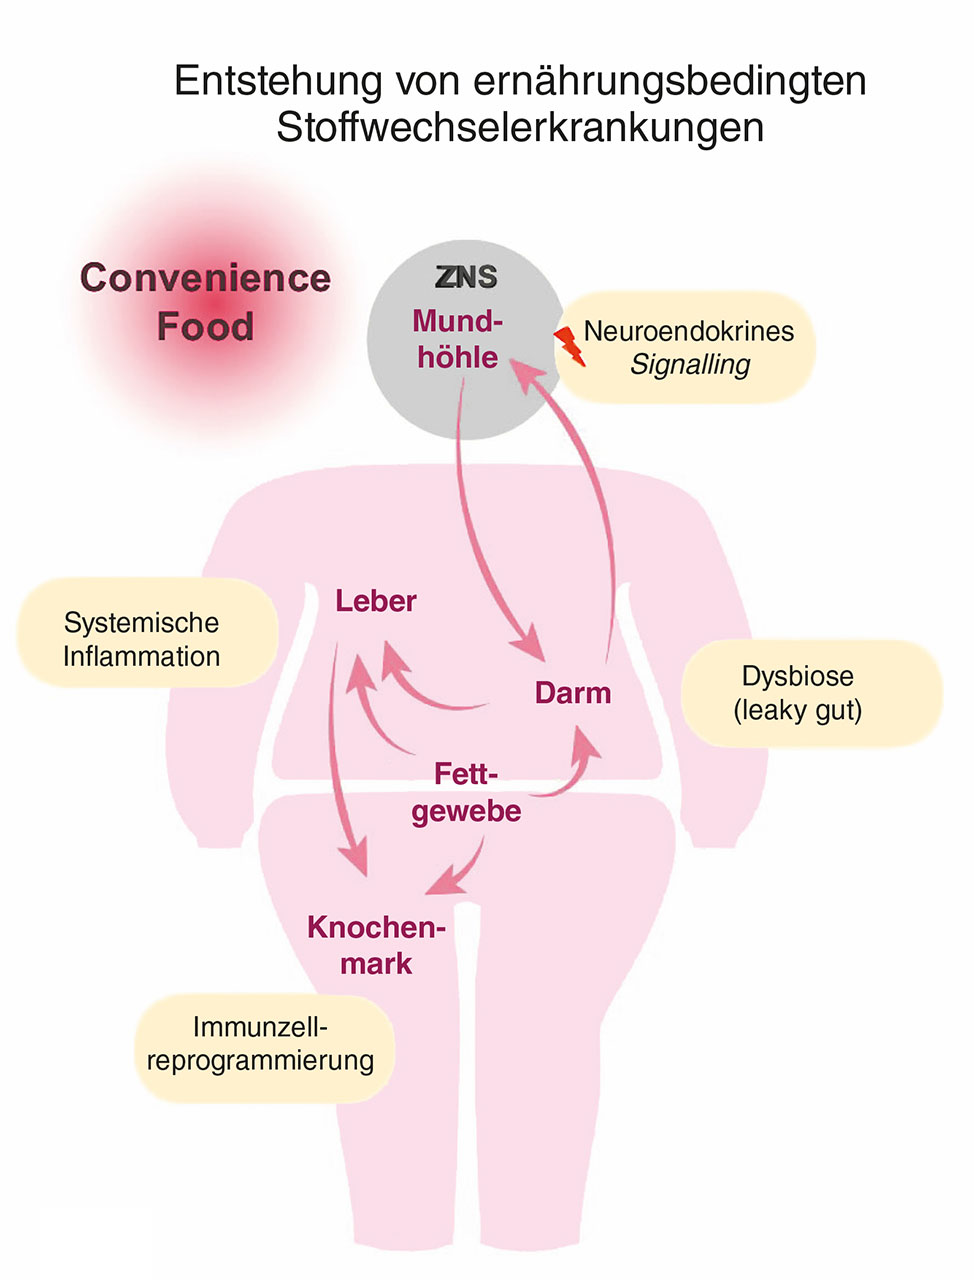 Abb. 1c Die durch die westliche Ernährungsweise bedingte Dysbiose im Orodigestivtrakt führt zu einer gestörten Barriereintegrität. Dadurch wandern verstärkt schädliche Mikroben und mikrobielle Metabolite in den Blutkreislauf ein und rufen systemische Entzündungsreaktionen hervor. Diese beeinflussen den Energiestoffwechsel verschiedener Organe, unter anderem im Fettgewebe, in der Leber, im Knochenmark und im zentralen Nervensystem (ZNS). Langfristig führen ein gestörter Energiestoffwechsel und ein erhöhter inflammatorischer Tonus in den einzelnen Geweben und Organen, aber auch systemisch, zur Entwicklung von metabolischen Lifestyle-Erkrankungen wie Adipositas, Diabetes mellitus Typ 2, kardiovaskulären Erkrankungen, neurodegenerativen Erkrankungen sowie Erkrankungen in der Mundhöhle. 